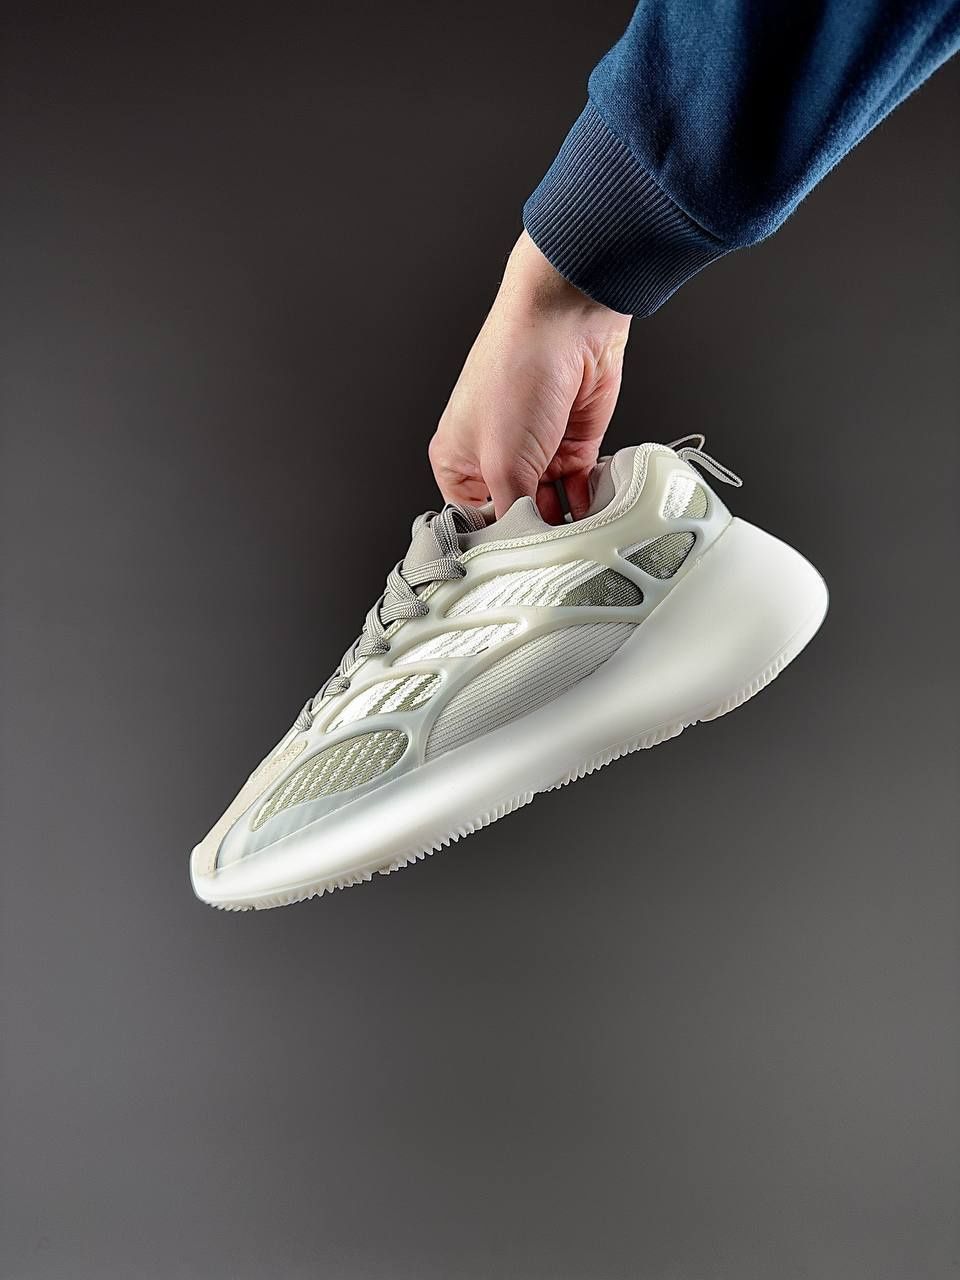 Кросівки чоловічі Adidas Yeezy Білі
Ціна - 1350
• Се